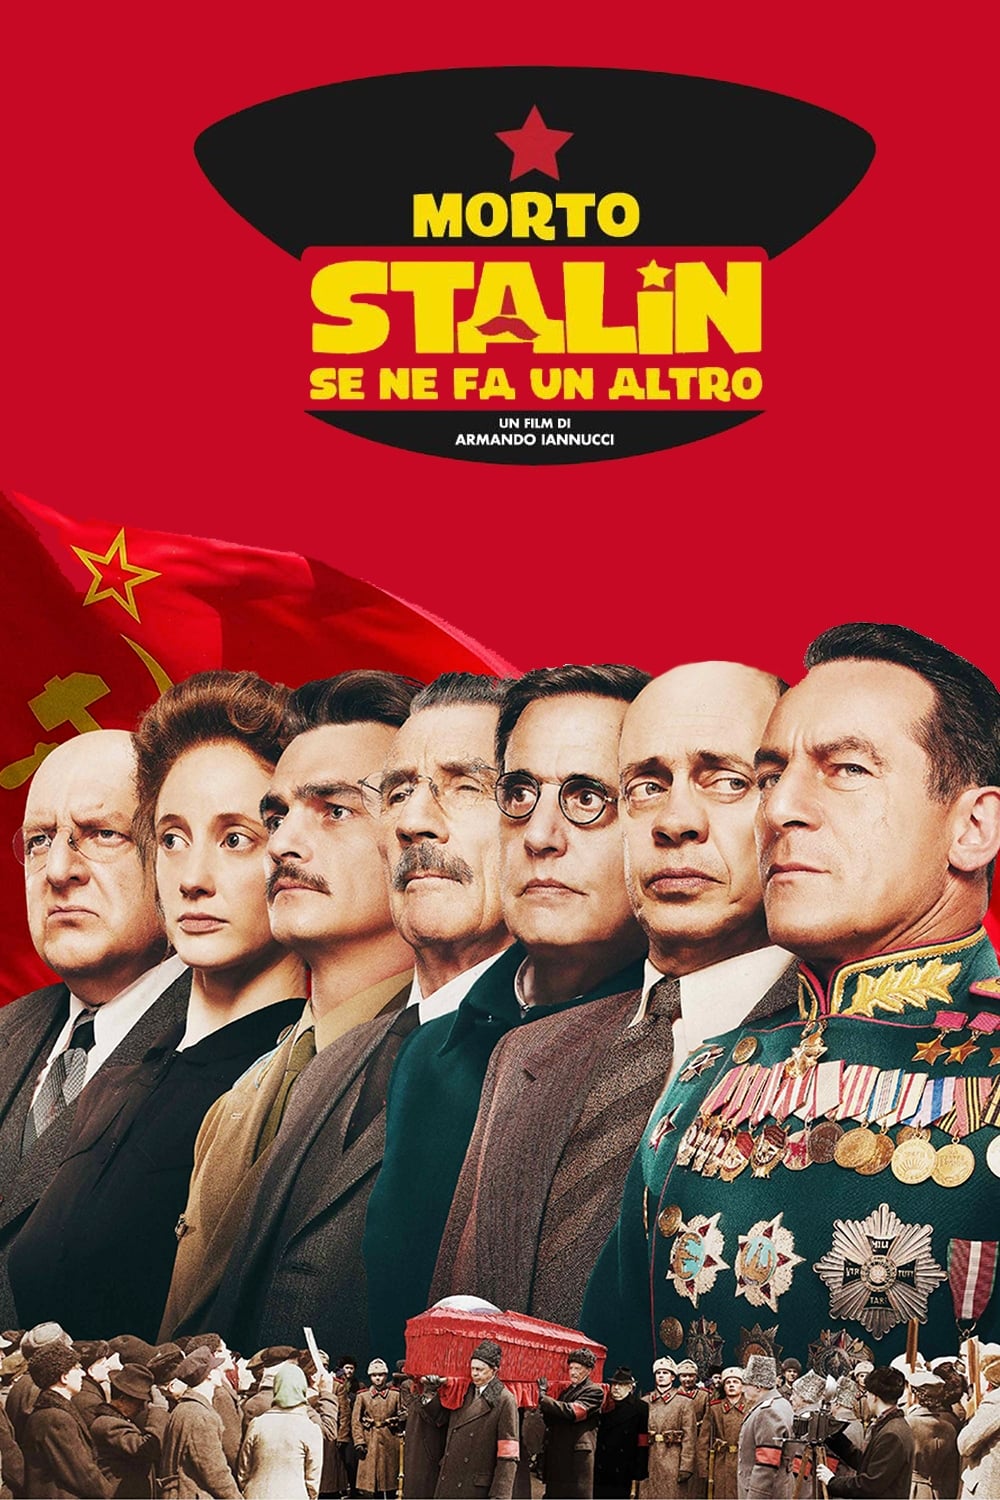 Morto Stalin, se ne fa un altro [HD] (2018)